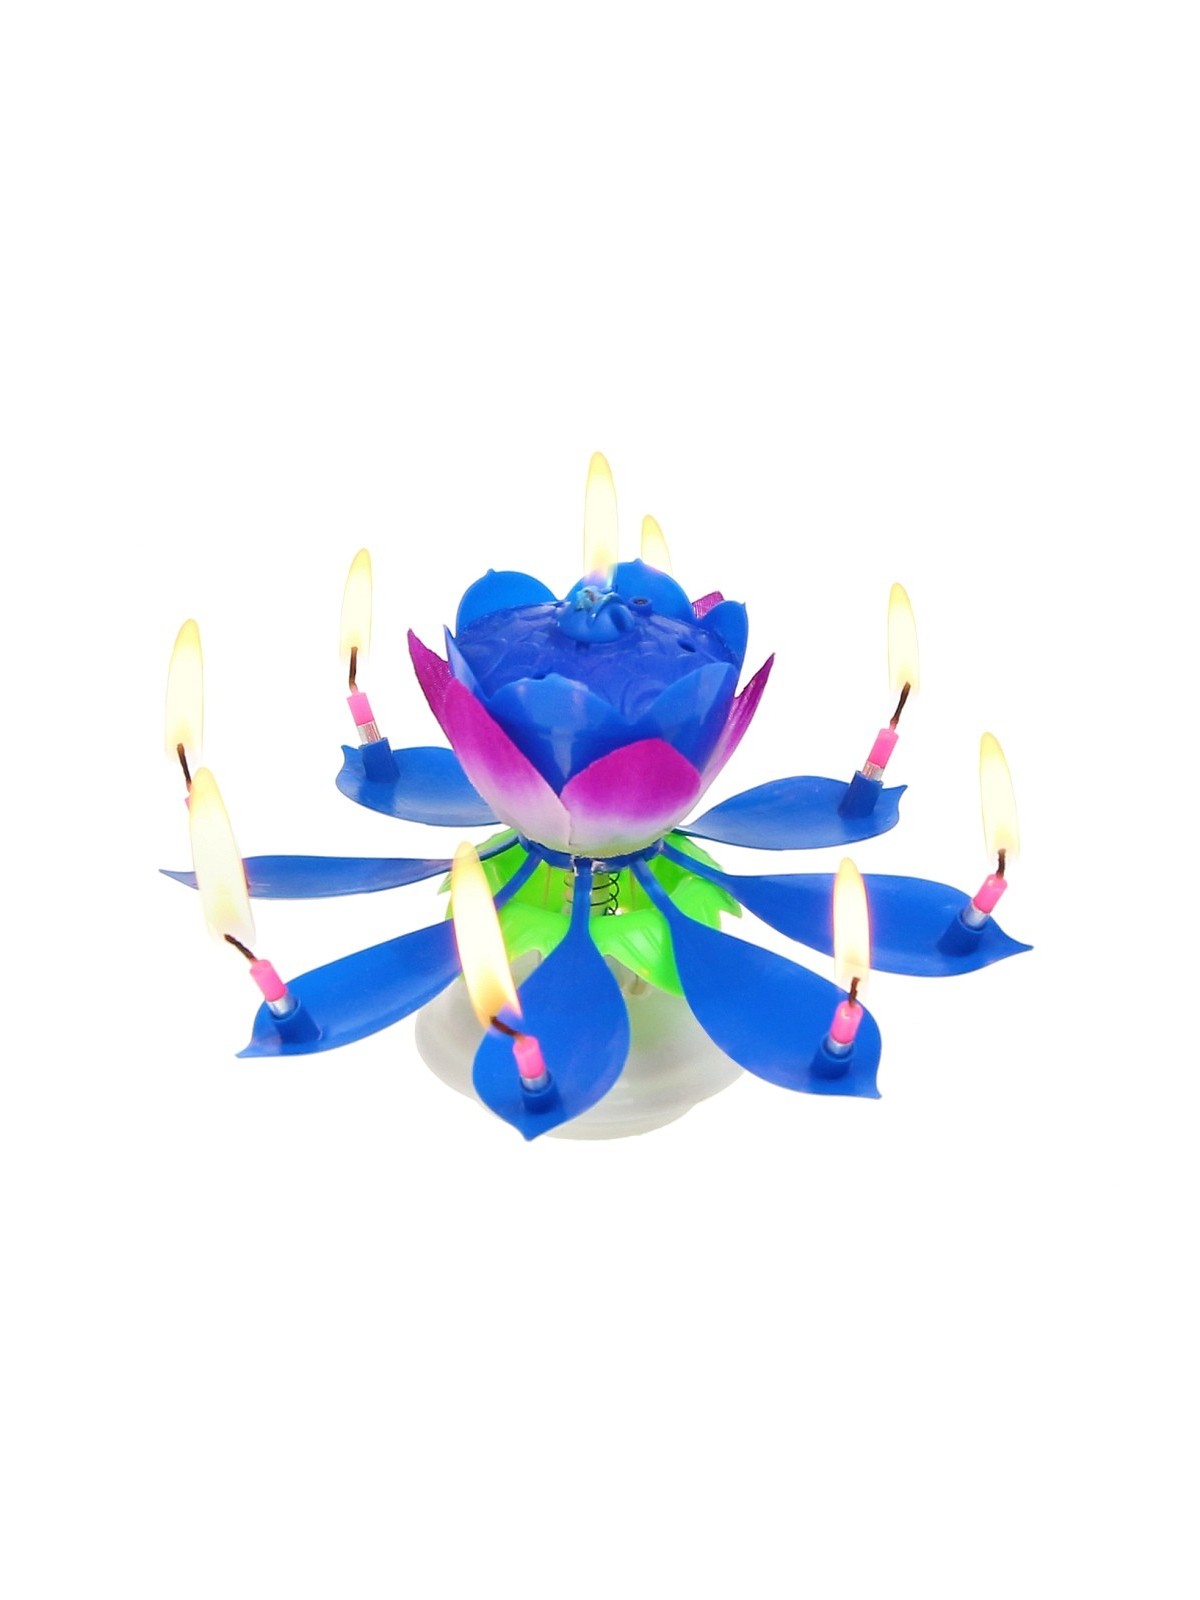 Singing lotus flower blue